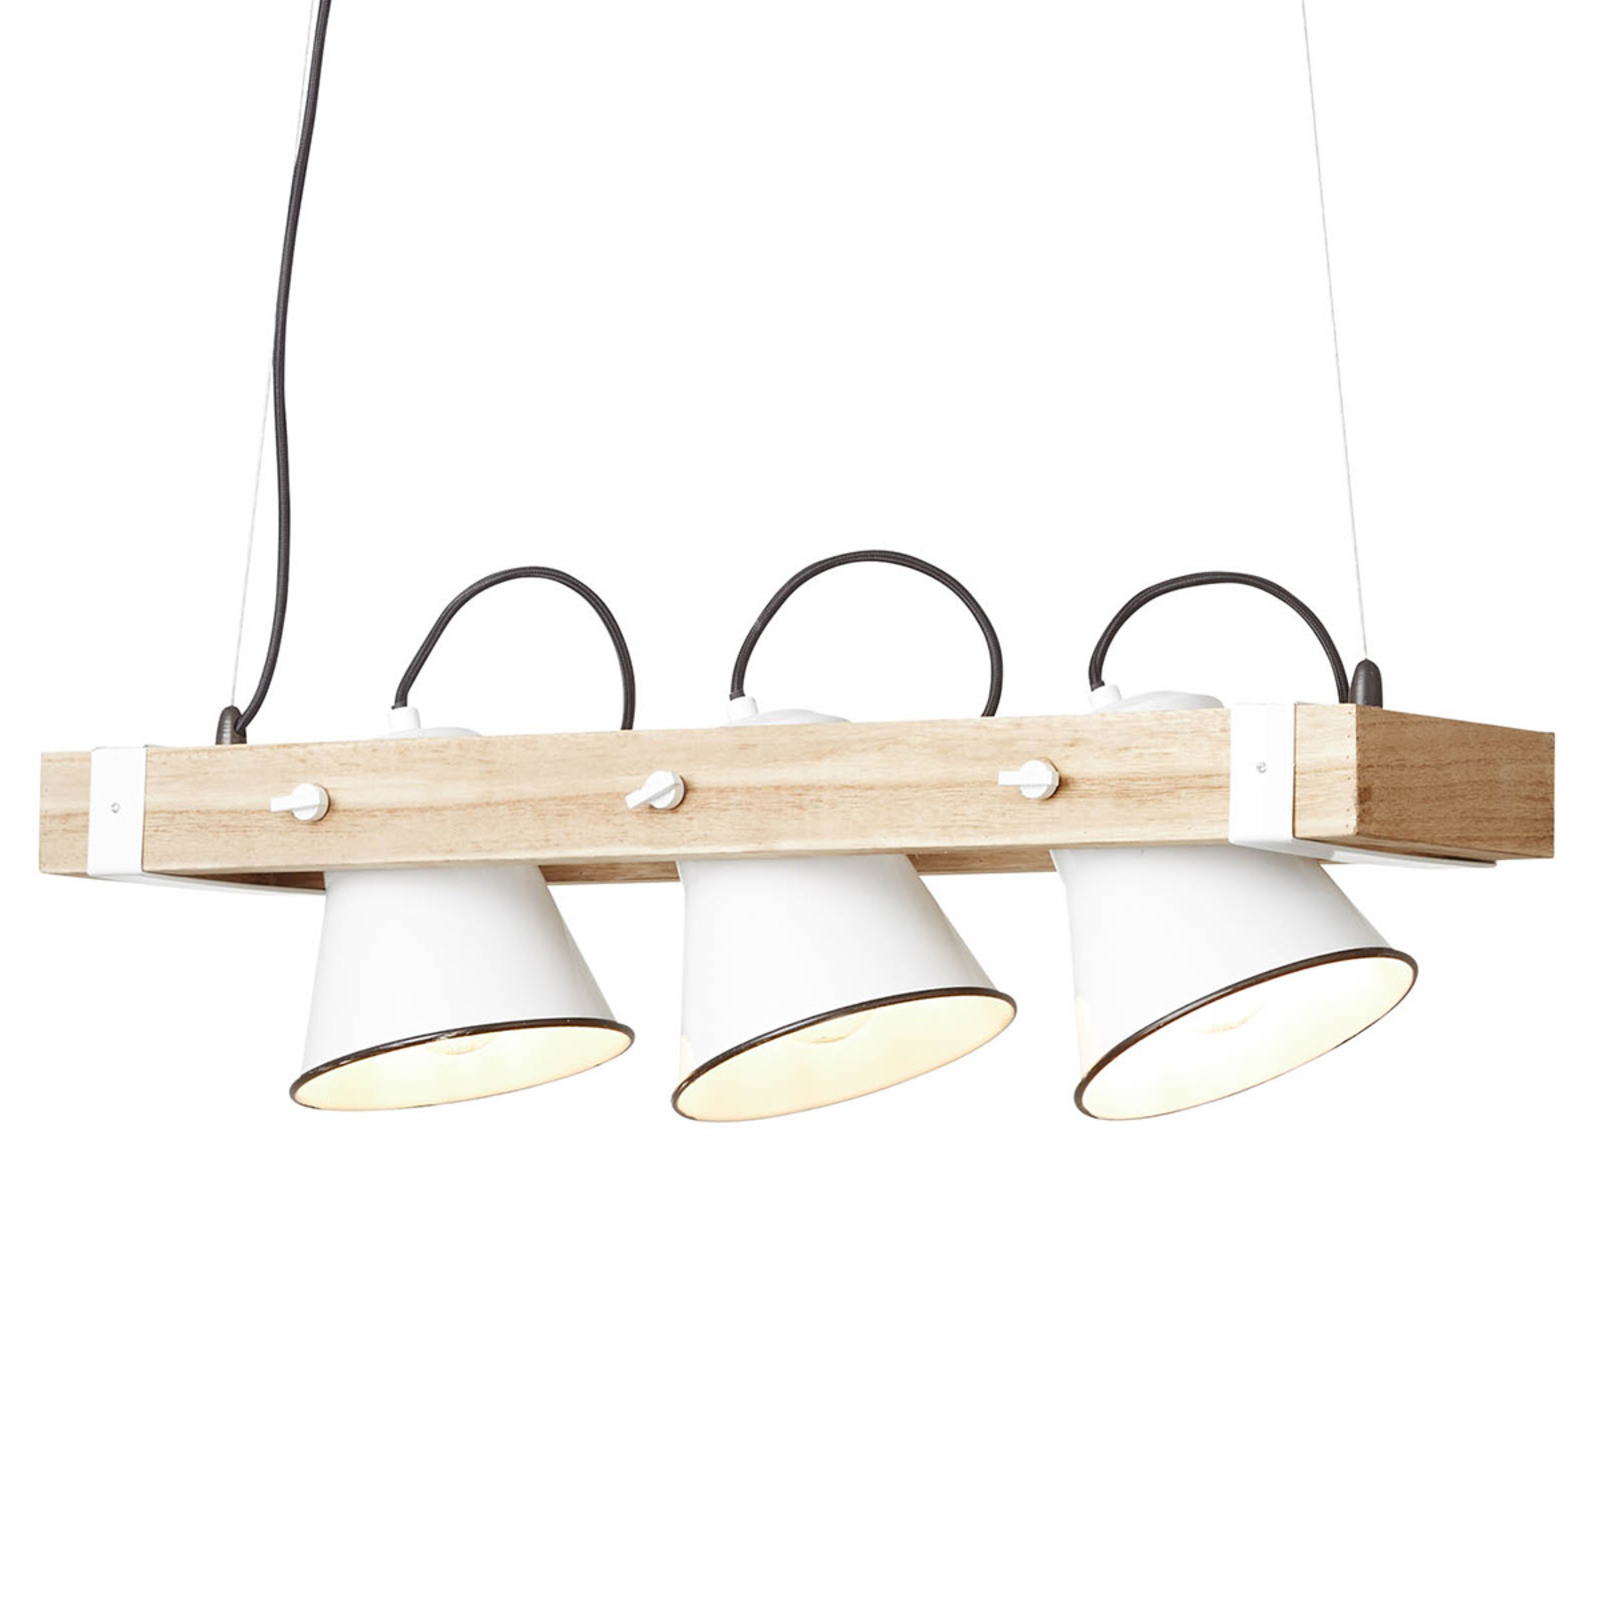 Hanglamp Plow met drie lampjes wit licht hout